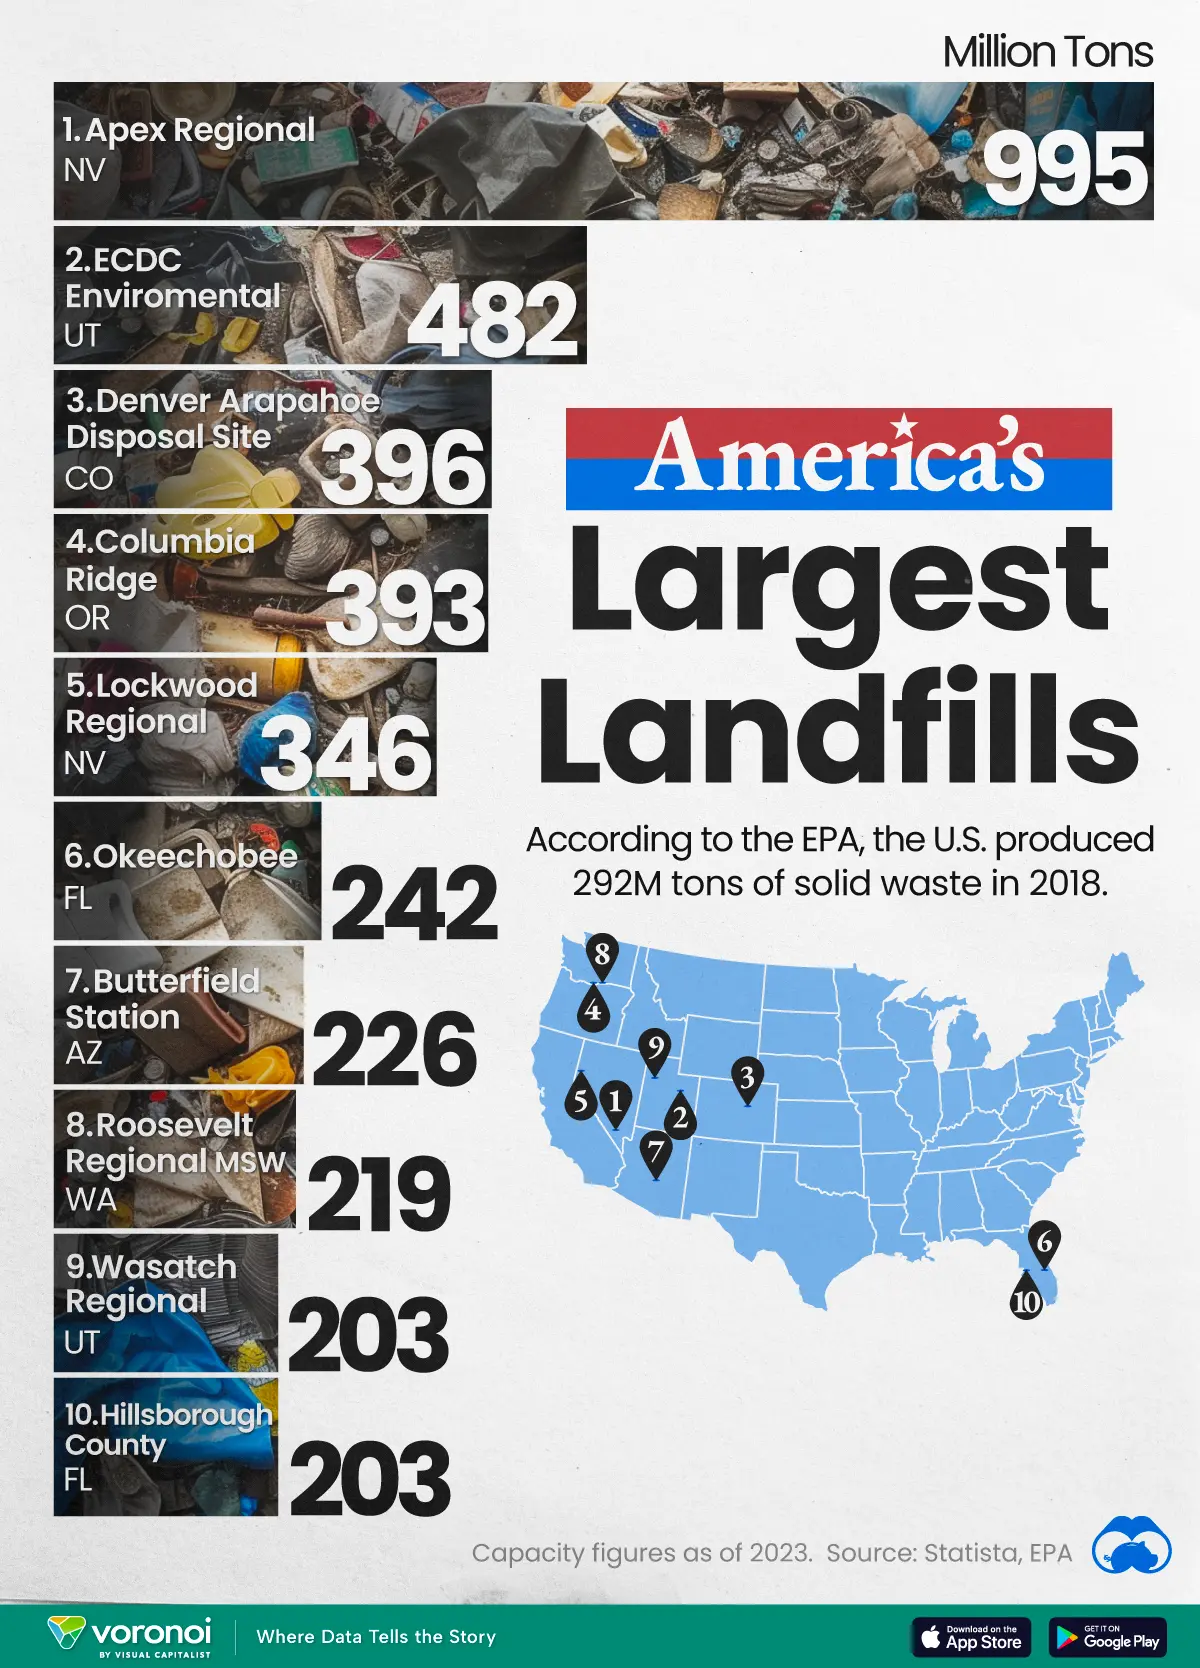  أكبر مدافن النفايات الأمريكية.. الموقع والطاقة الاستيعابية